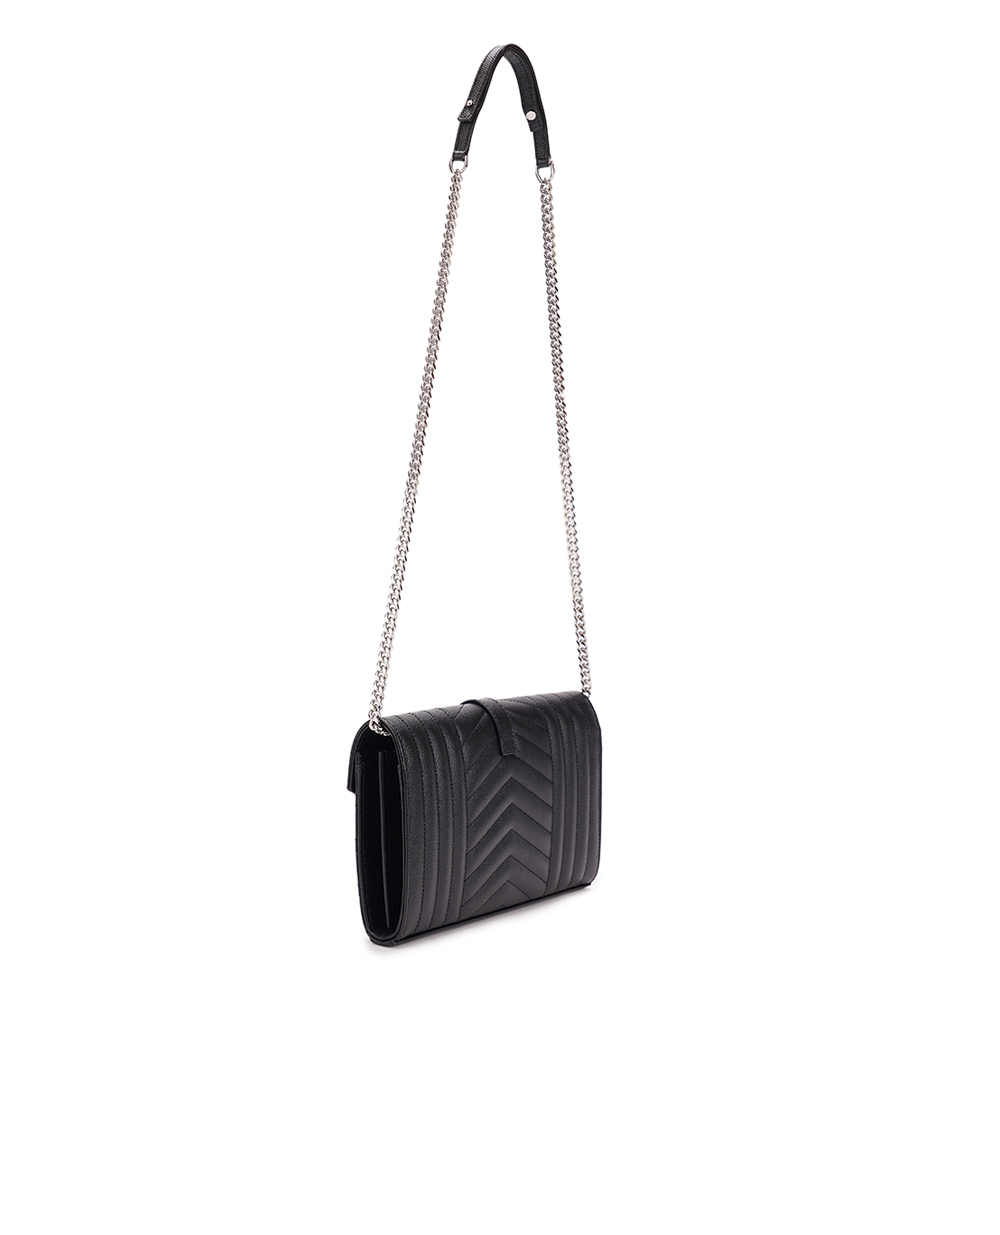 Кожаная сумка Envelope Chain Wallet Saint Laurent 620280-BOW92, черный цвет • Купить в интернет-магазине Kameron